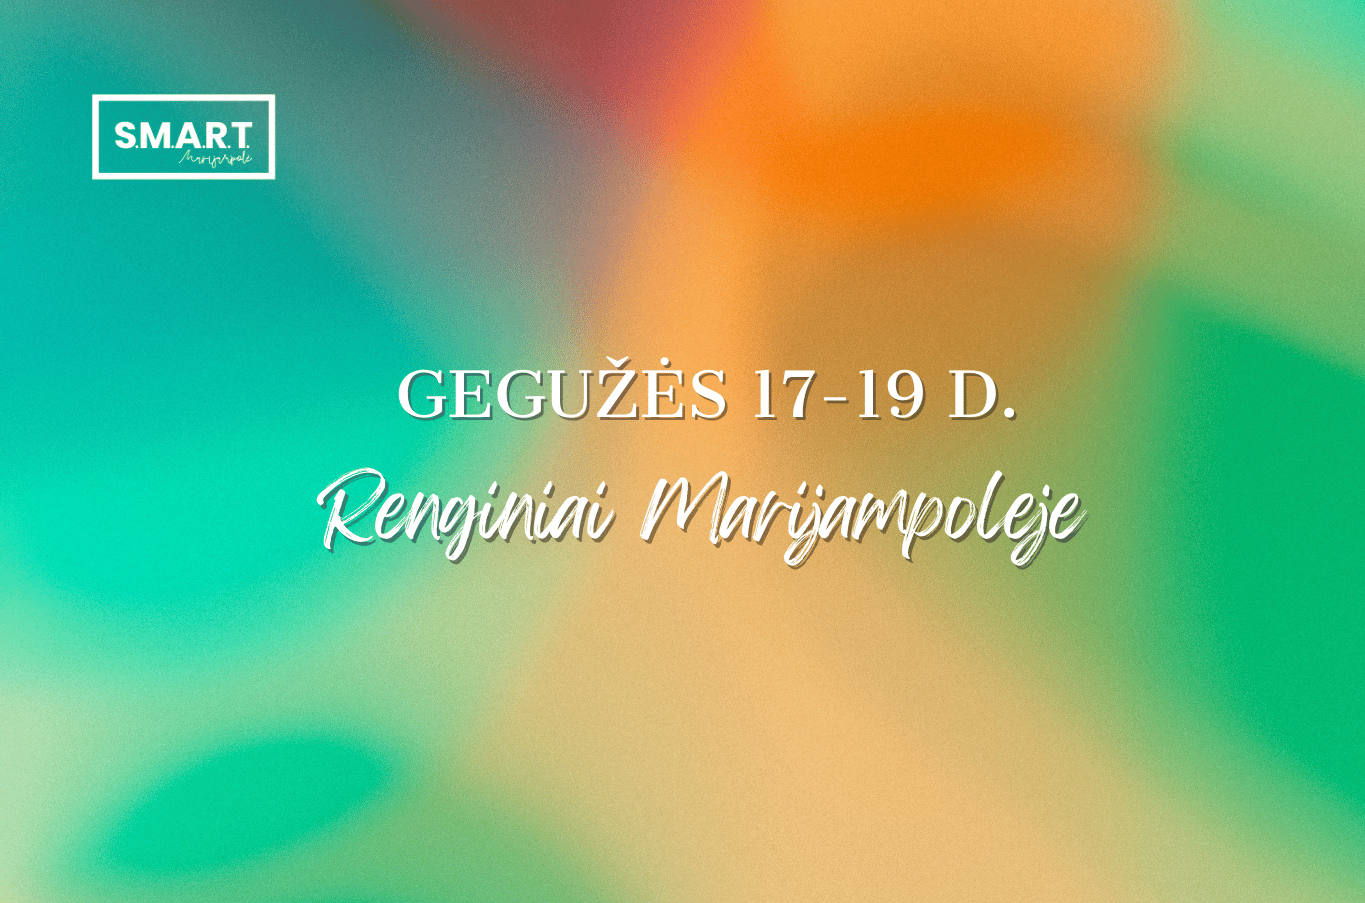 You are currently viewing Savaitgalio renginiai Marijampolėje | 05.17-05.19